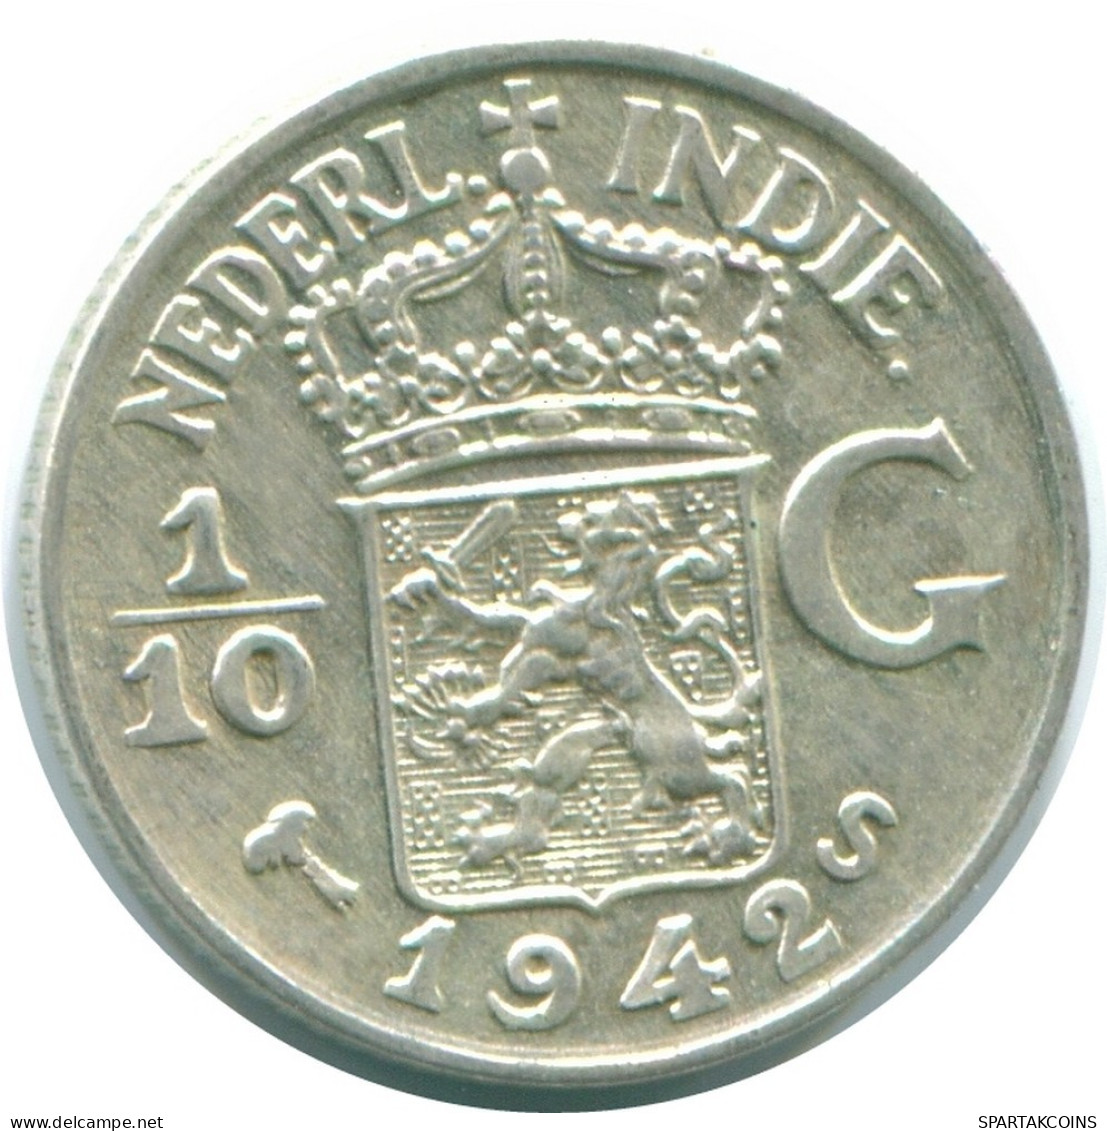 1/10 GULDEN 1942 NETHERLANDS EAST INDIES SILVER Colonial Coin #NL13891.3.U.A - Niederländisch-Indien